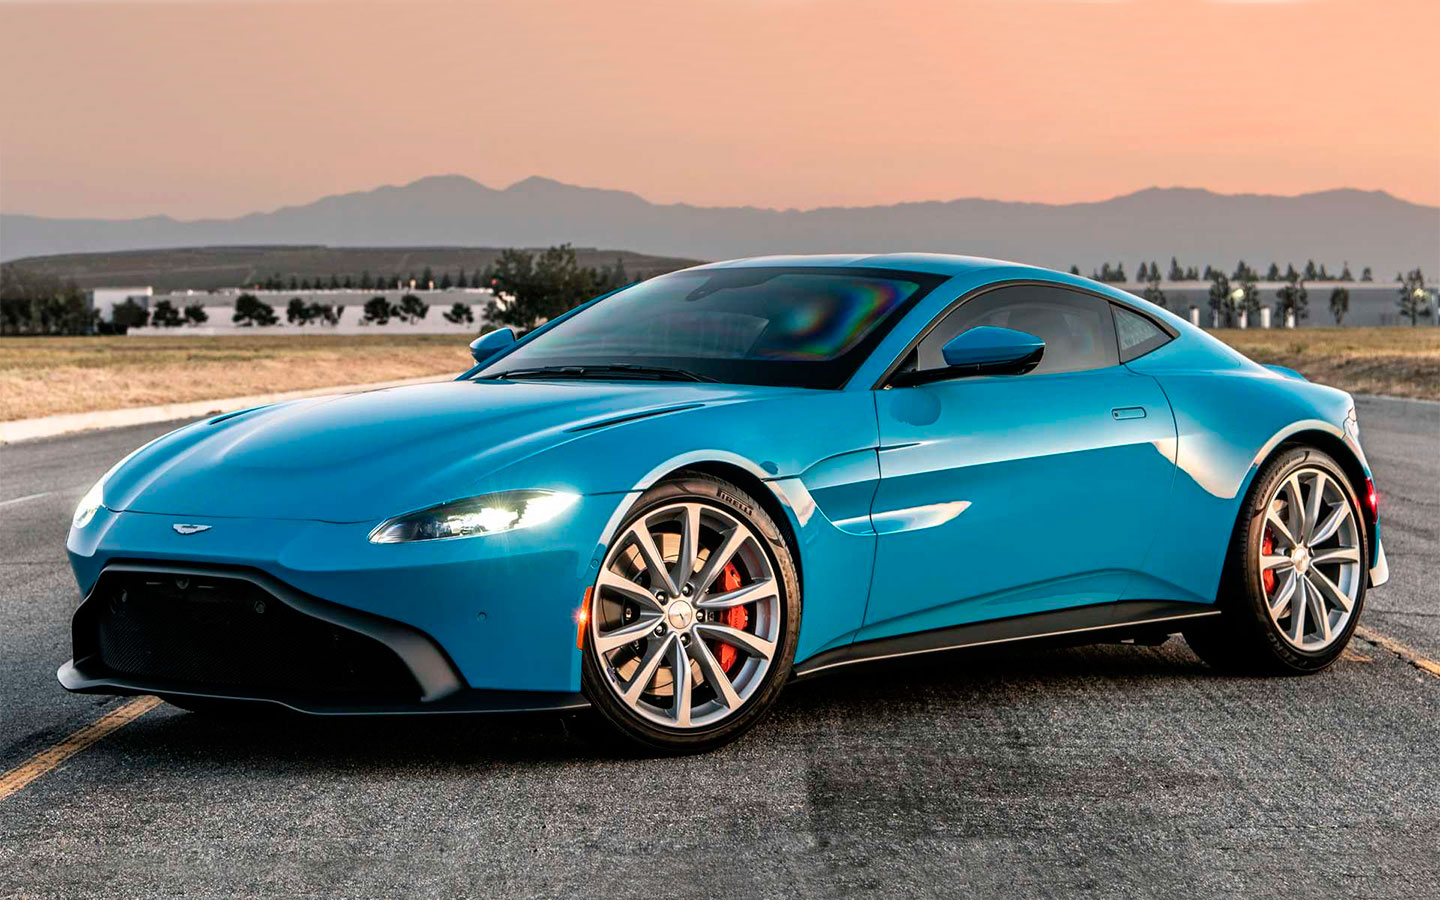 Aston Martin готовит новый суперкар ограниченного тиража к 2023 году